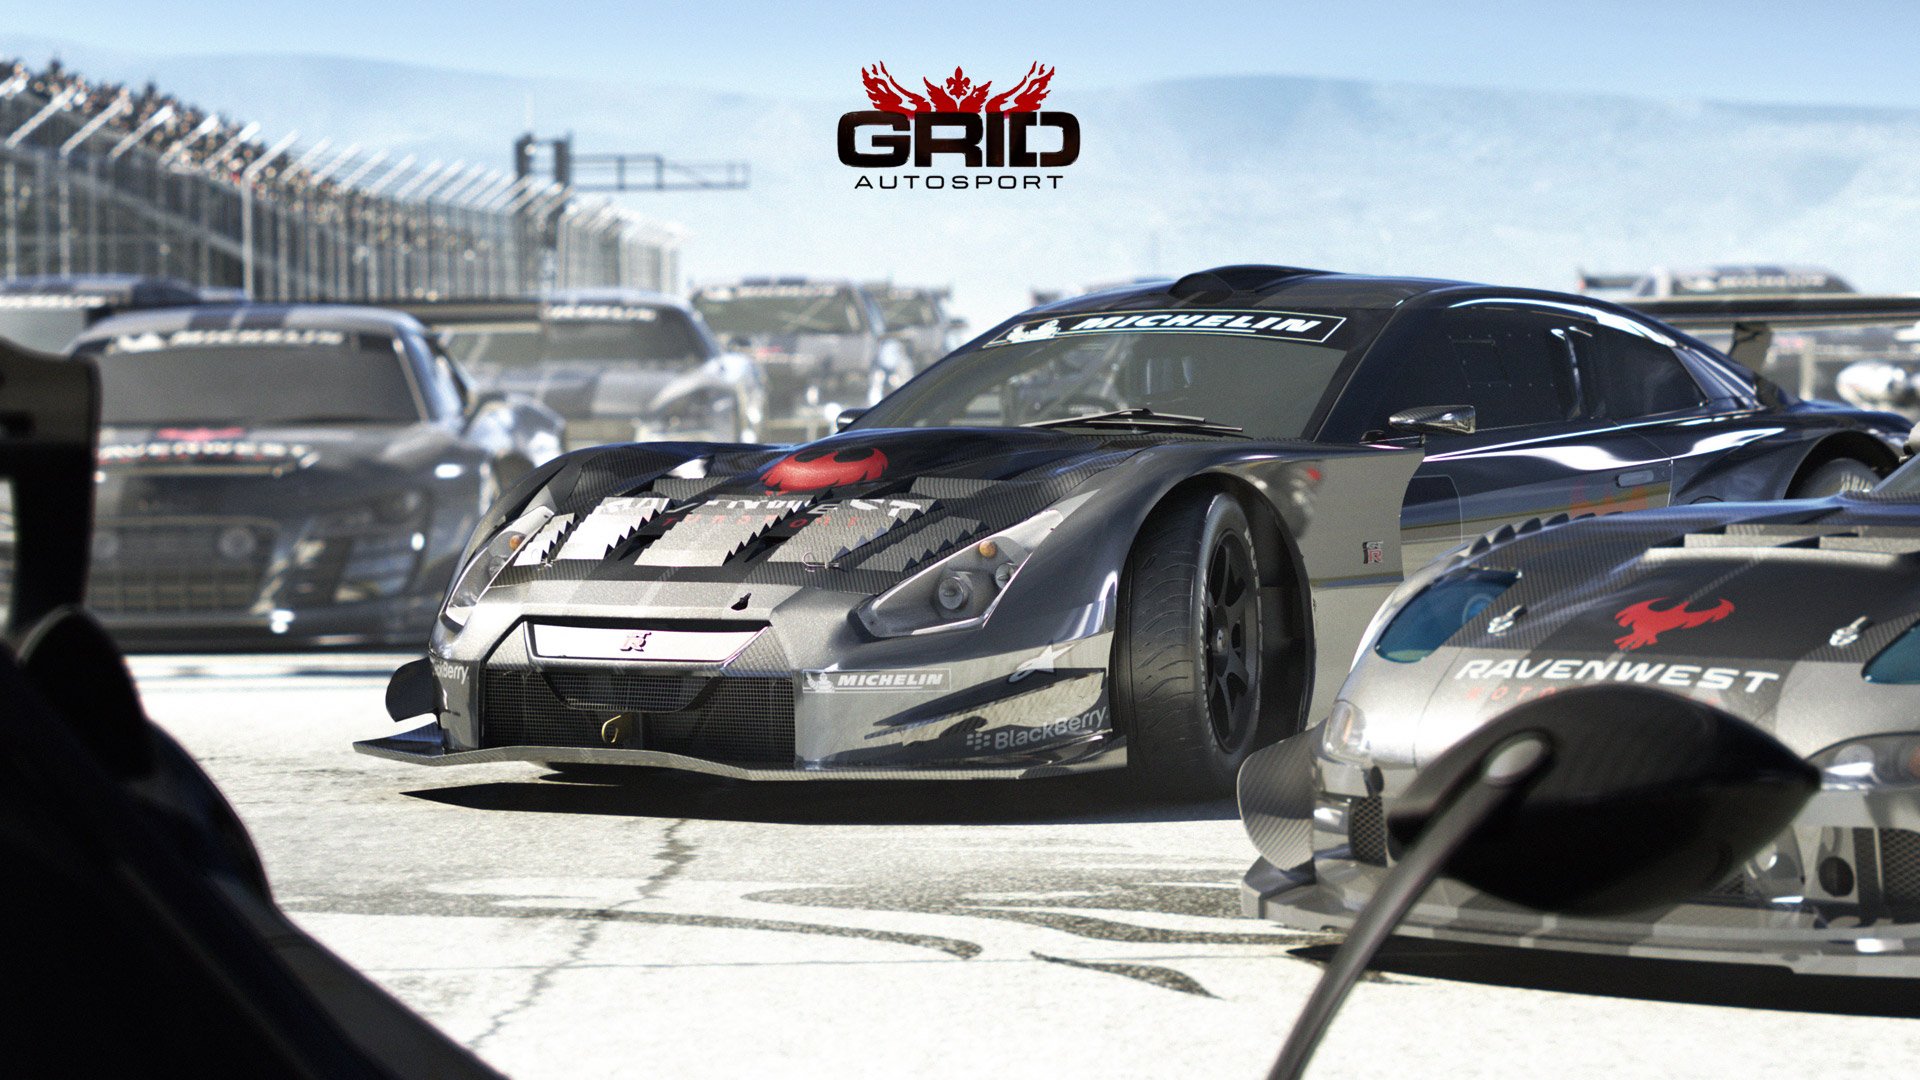 1080p grid autosport